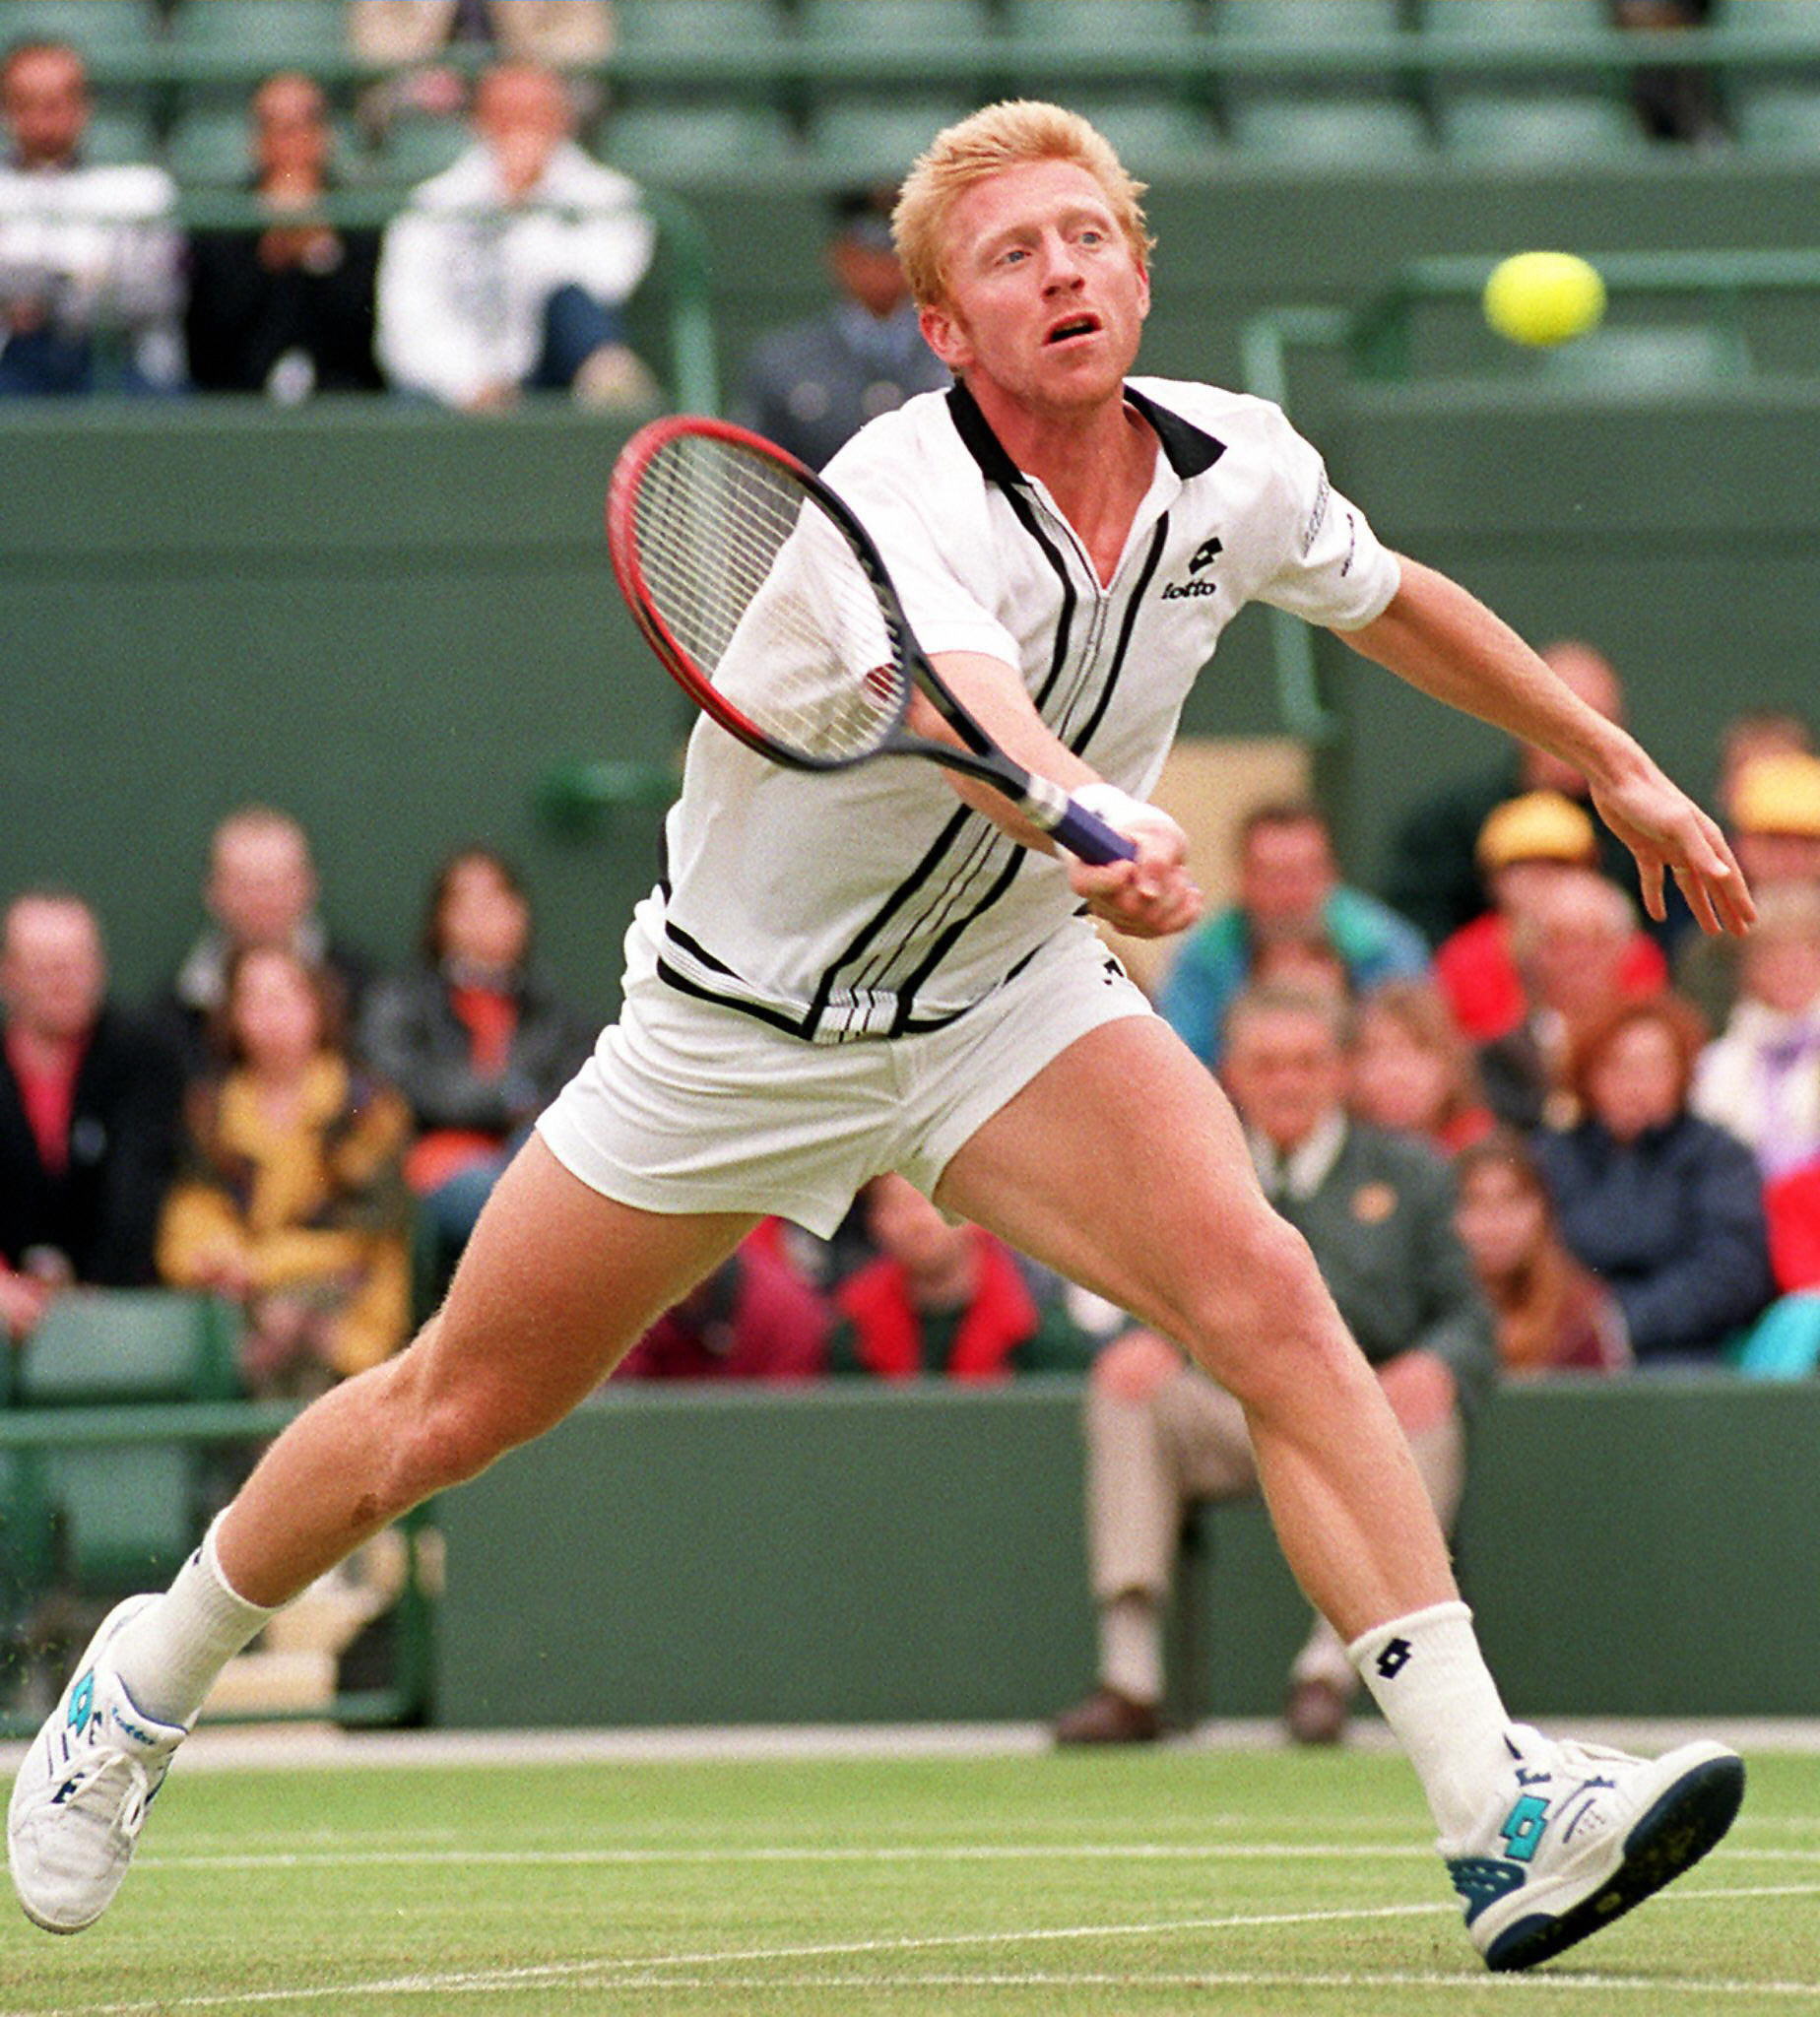 La exestrella alemana del tenis Boris Becker en un partido contra el británico Mark Petchey en Wimbledon, el 20 de junio de 1997